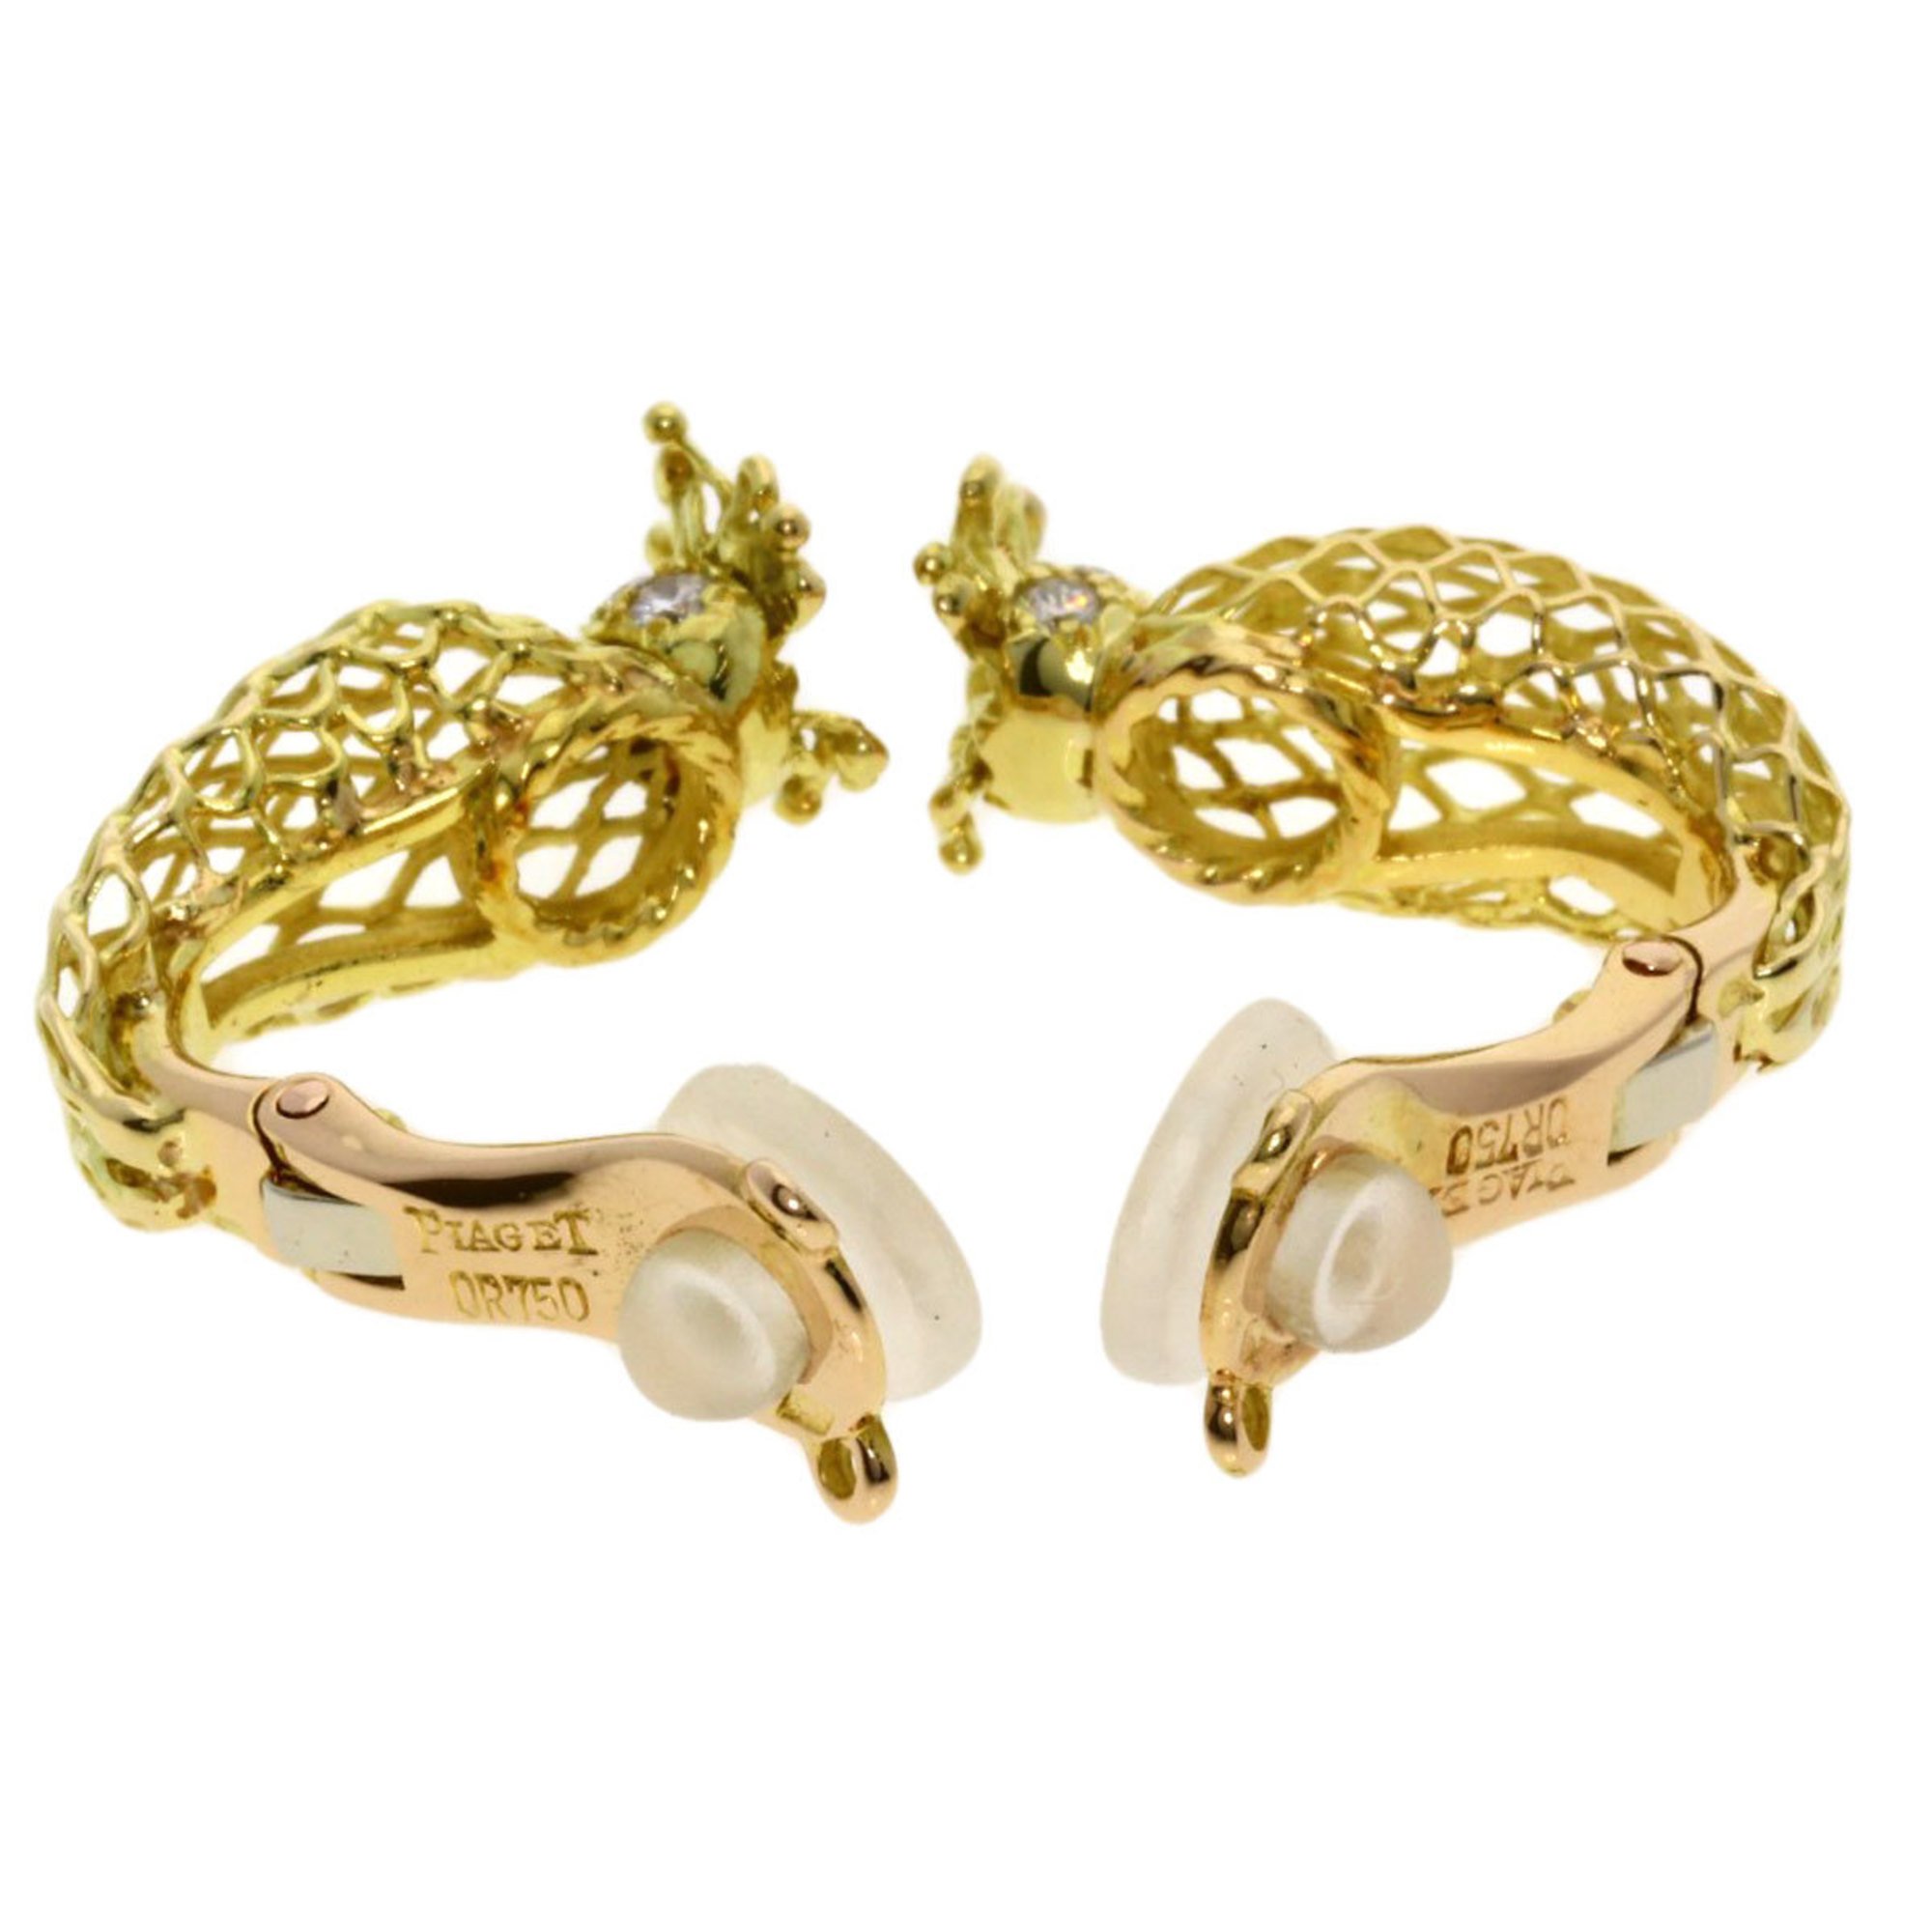 Piaget Diamond Earrings in 18k Yellow Gold for Women